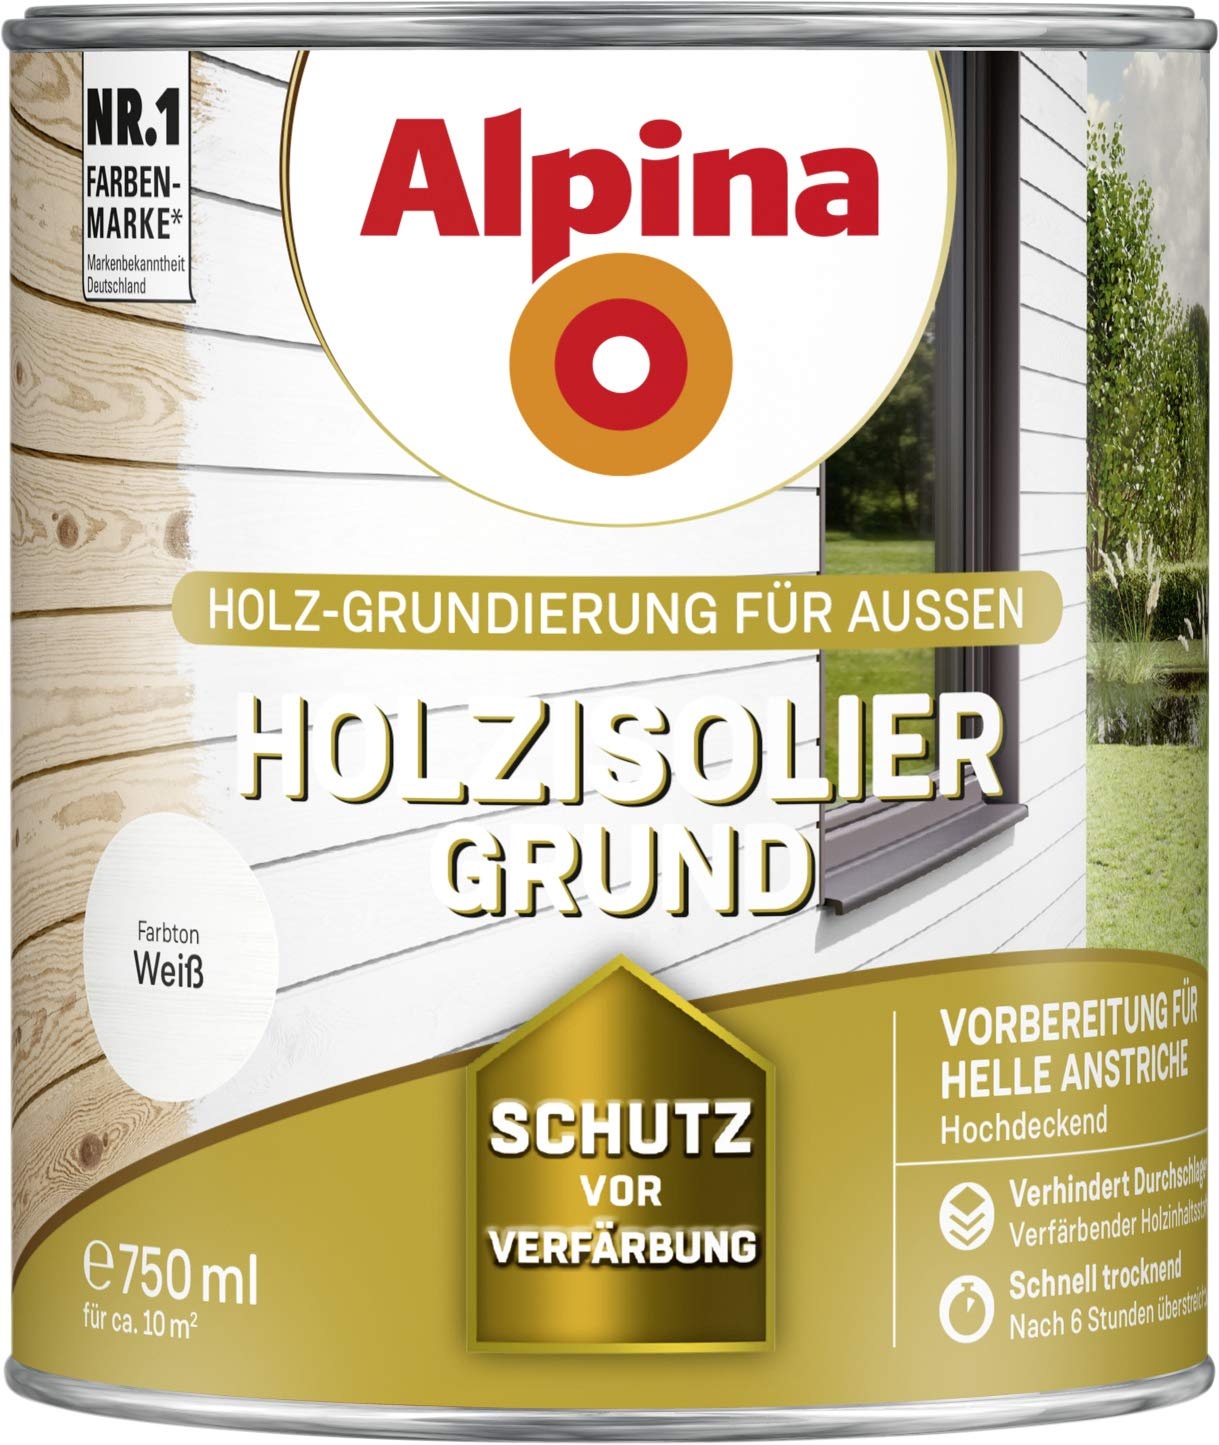 Alpina Holzisolier-Grund Weiß 750ml